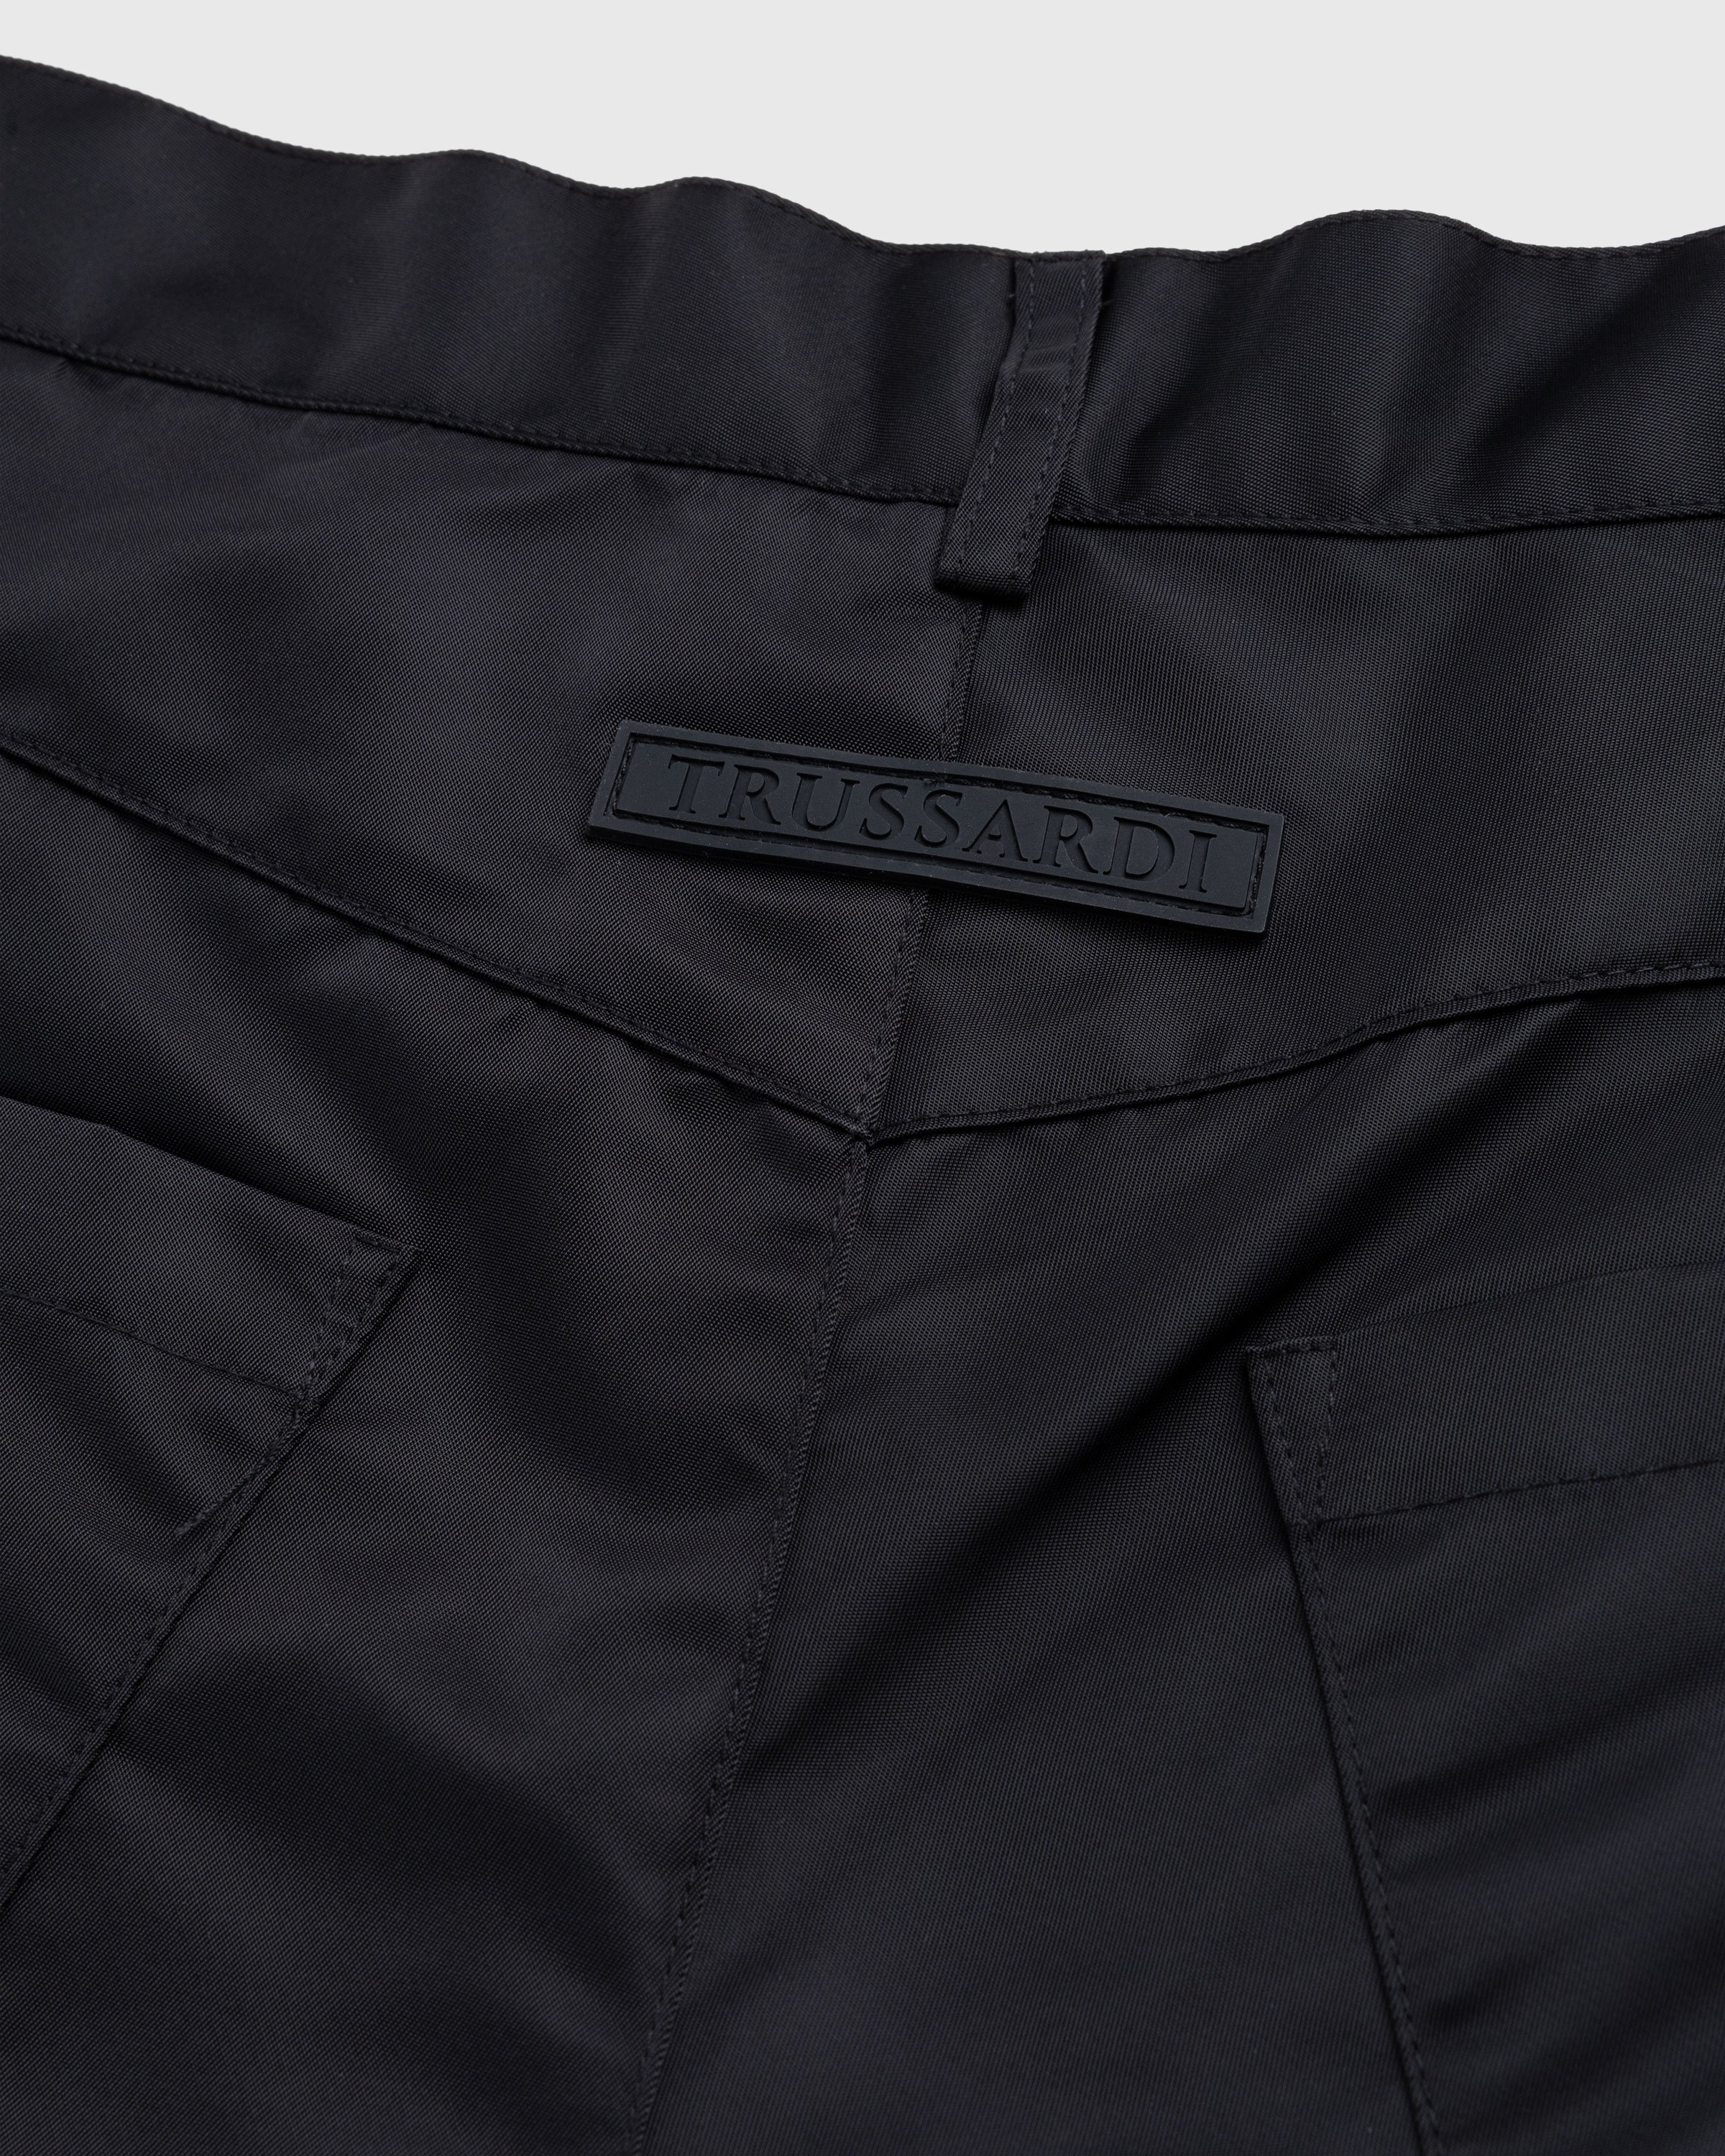 Trussardi - Nylon Shorts Black - Clothing - Black - Image 5